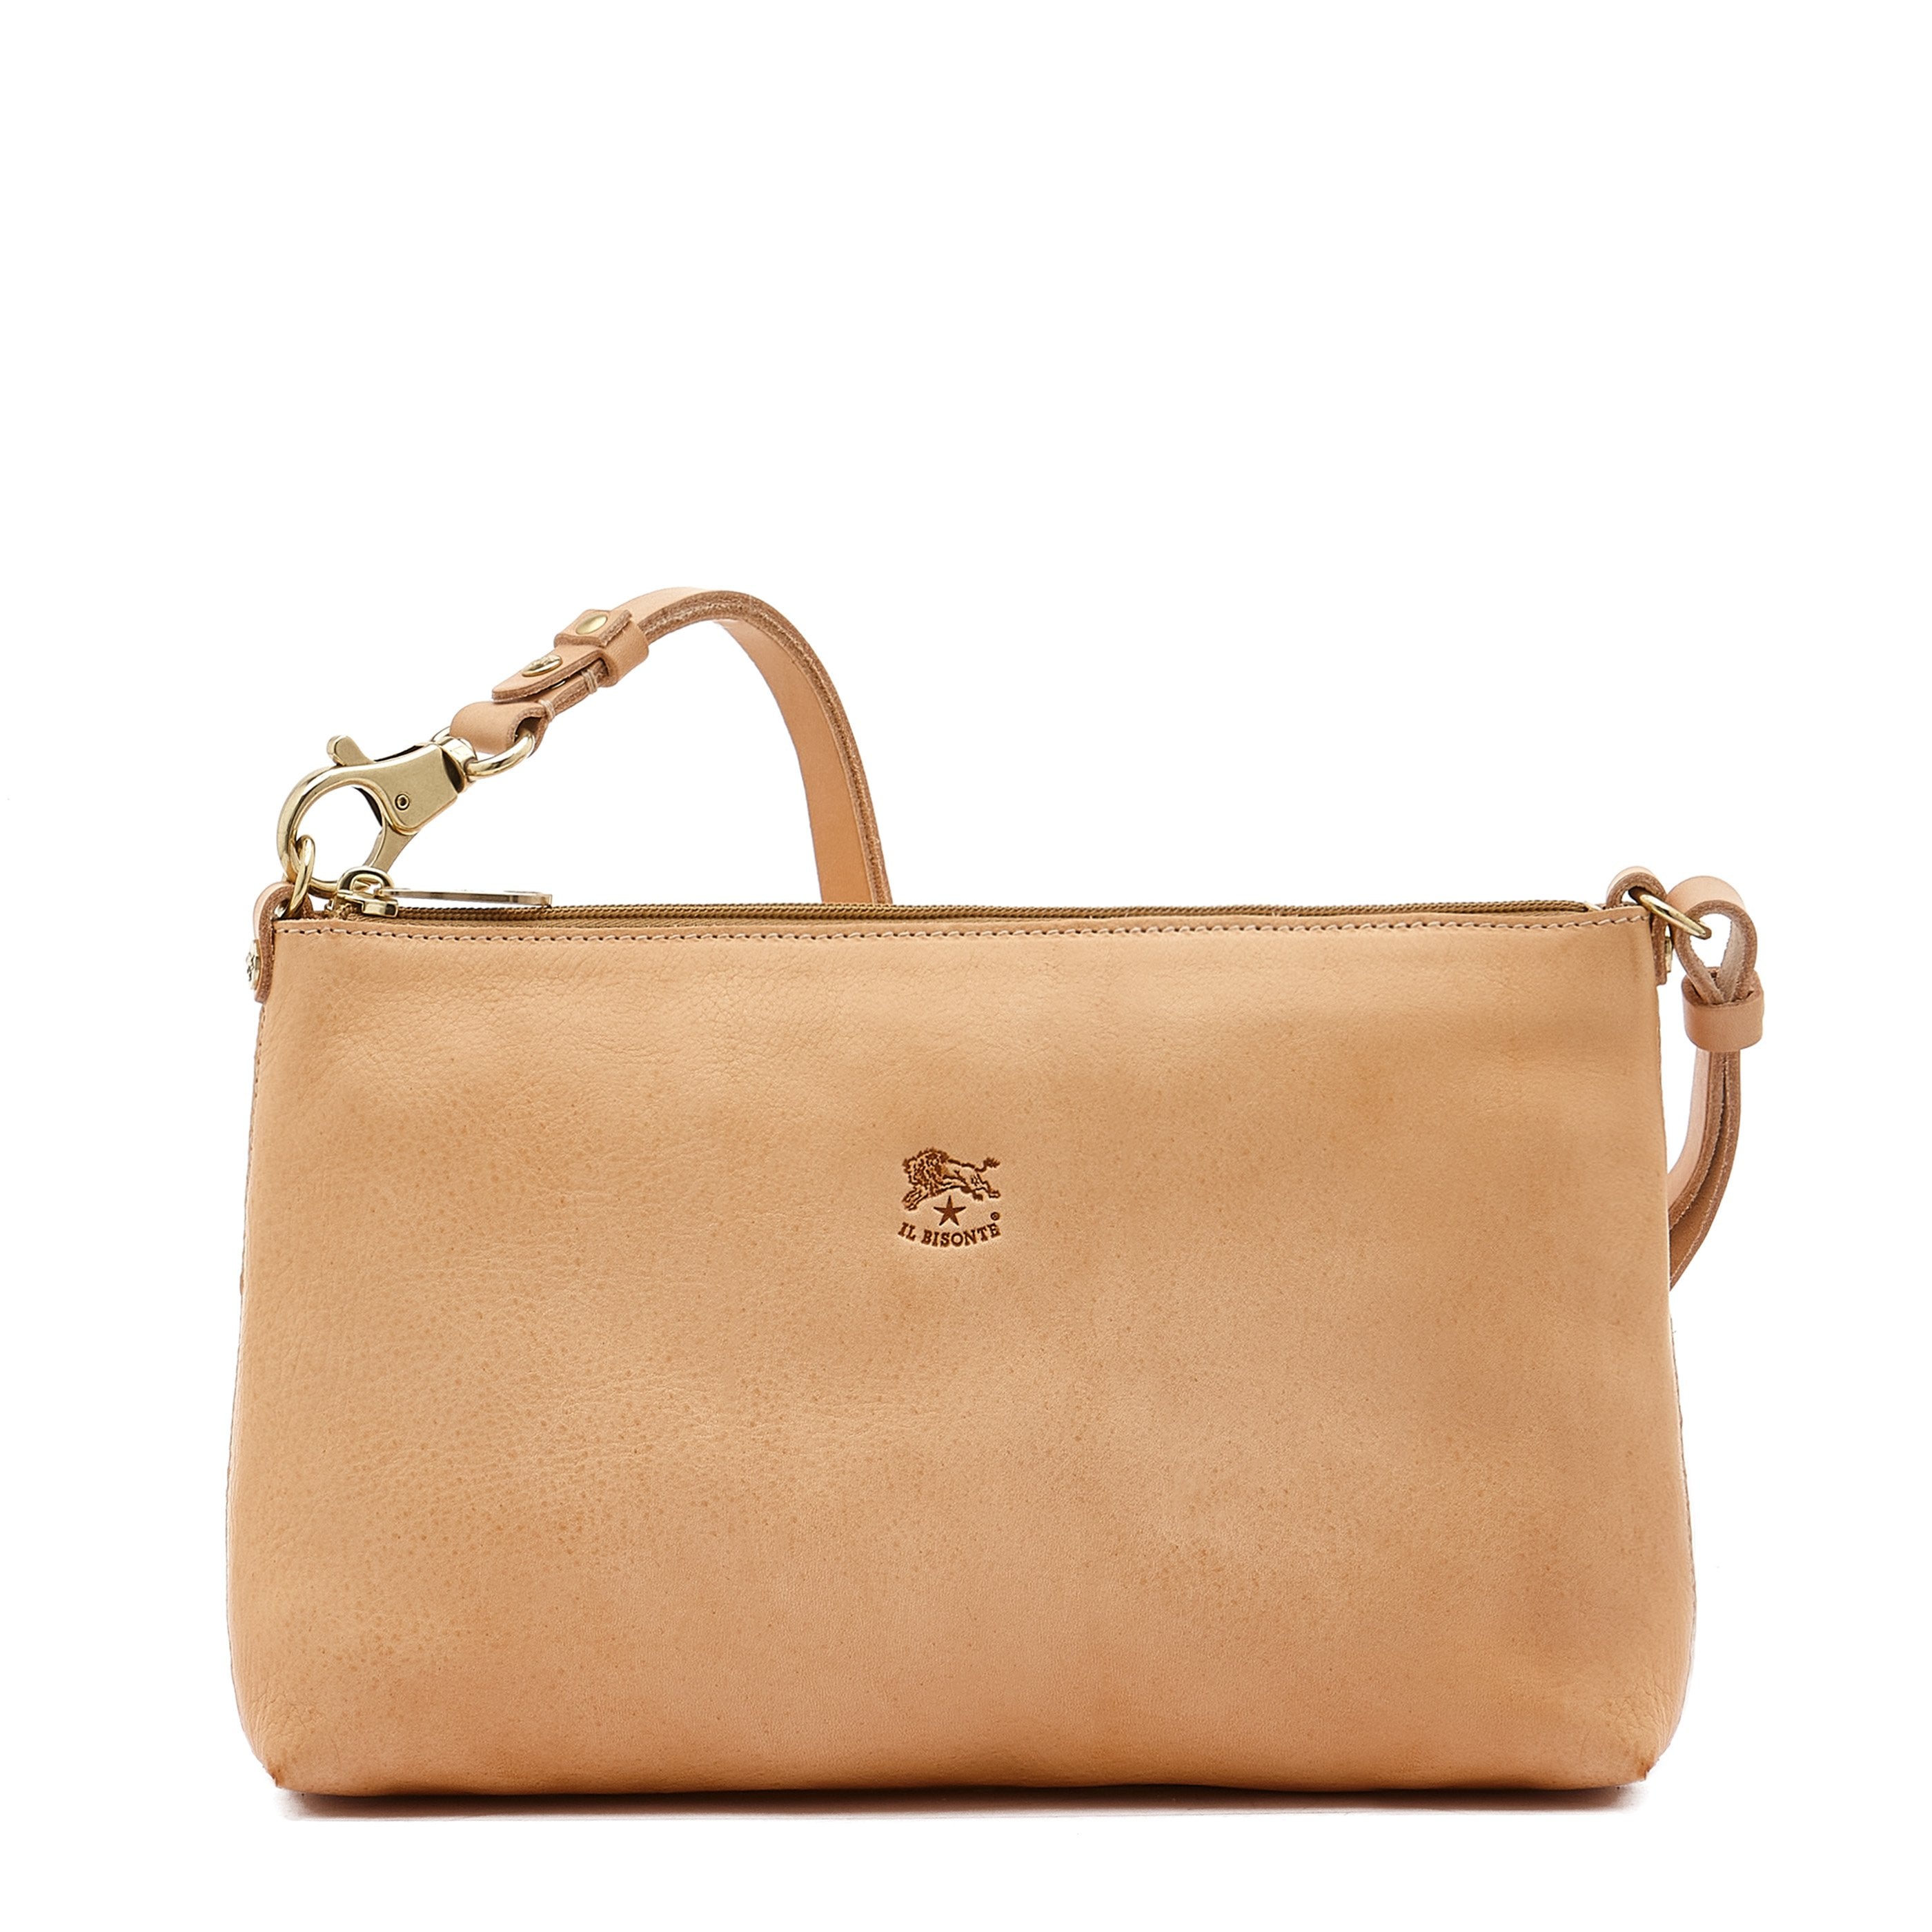 Salina | Women's shoulder bag in leather color natural – Il Bisonte